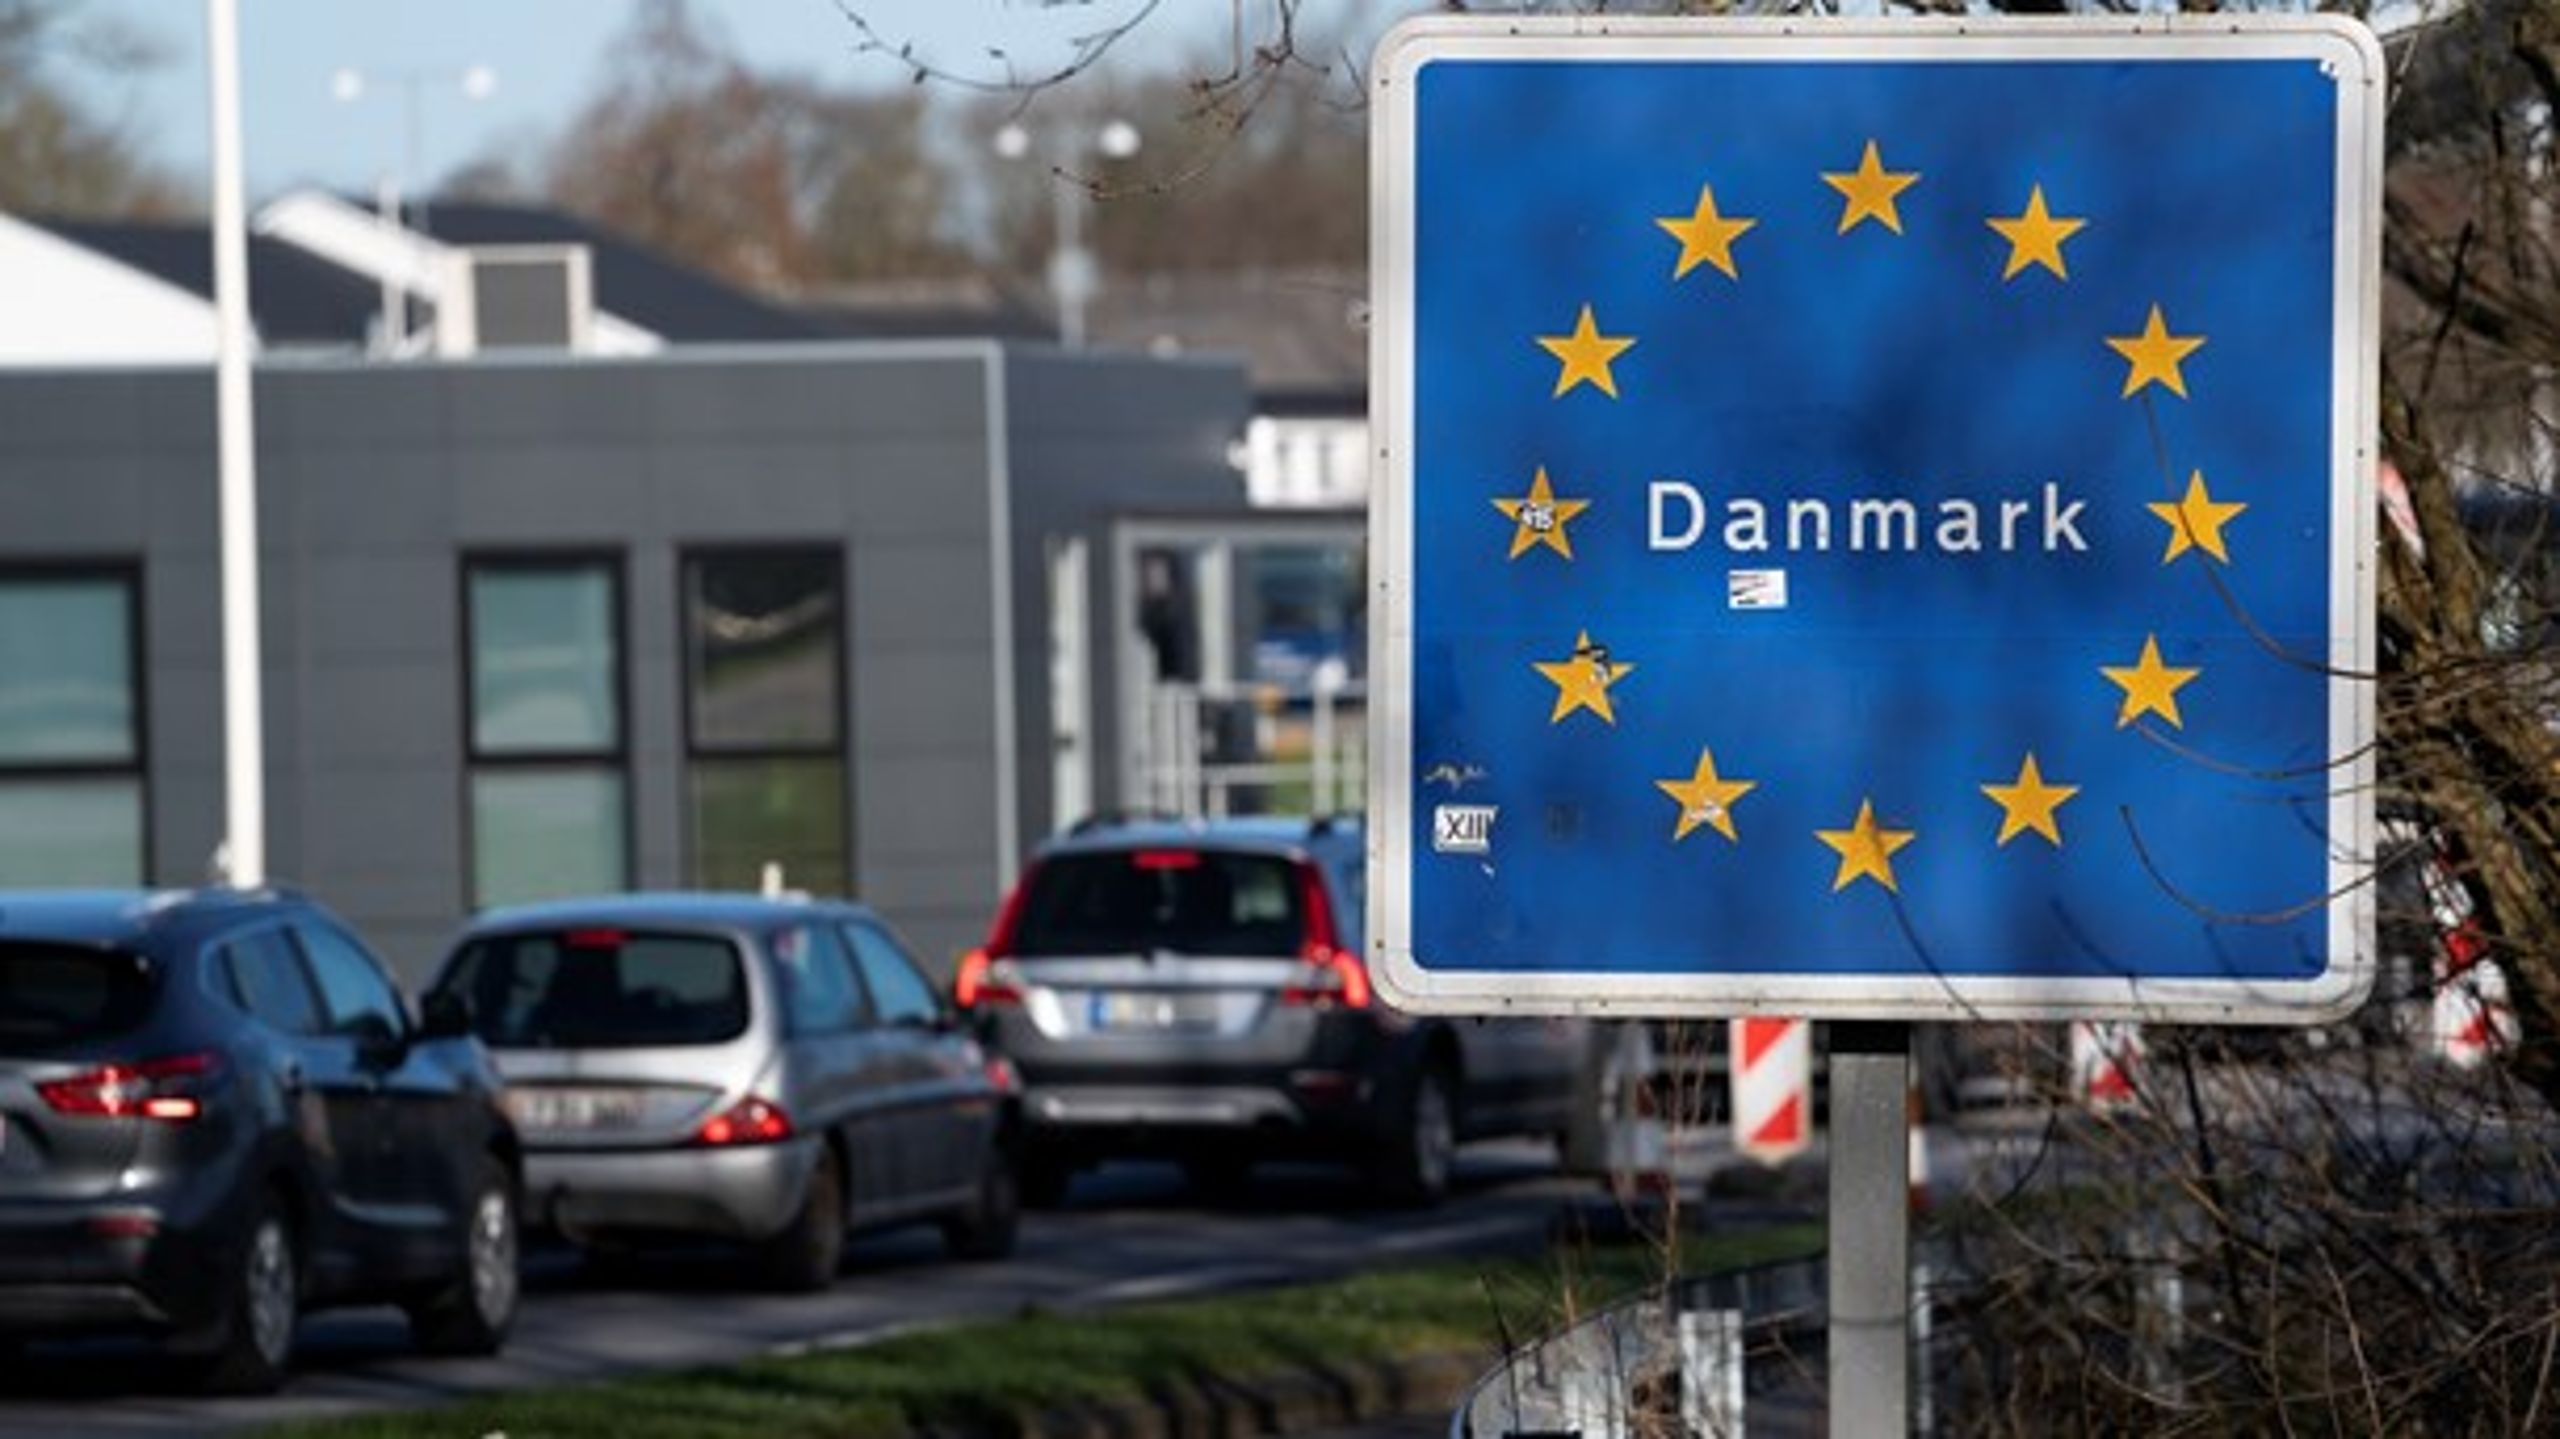 Alene ved at åbne grænsen mod syd kan vi forvente, at tyske turister vil lægge op til 7,5 milliarder kroner i danske virksomheder hen over sommeren, skriver SMVdanmarks cheføkonom.